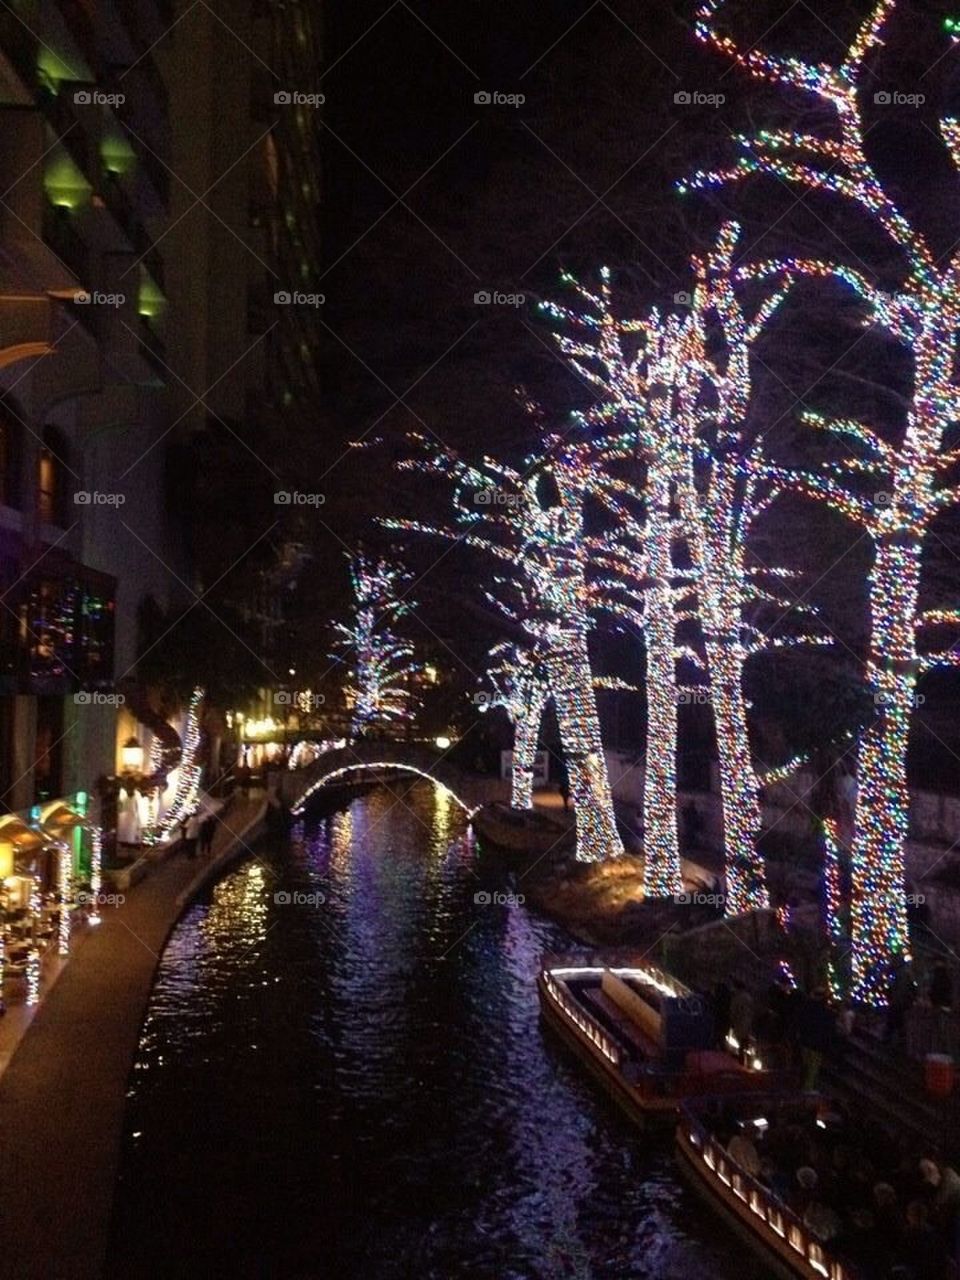 Christmas River